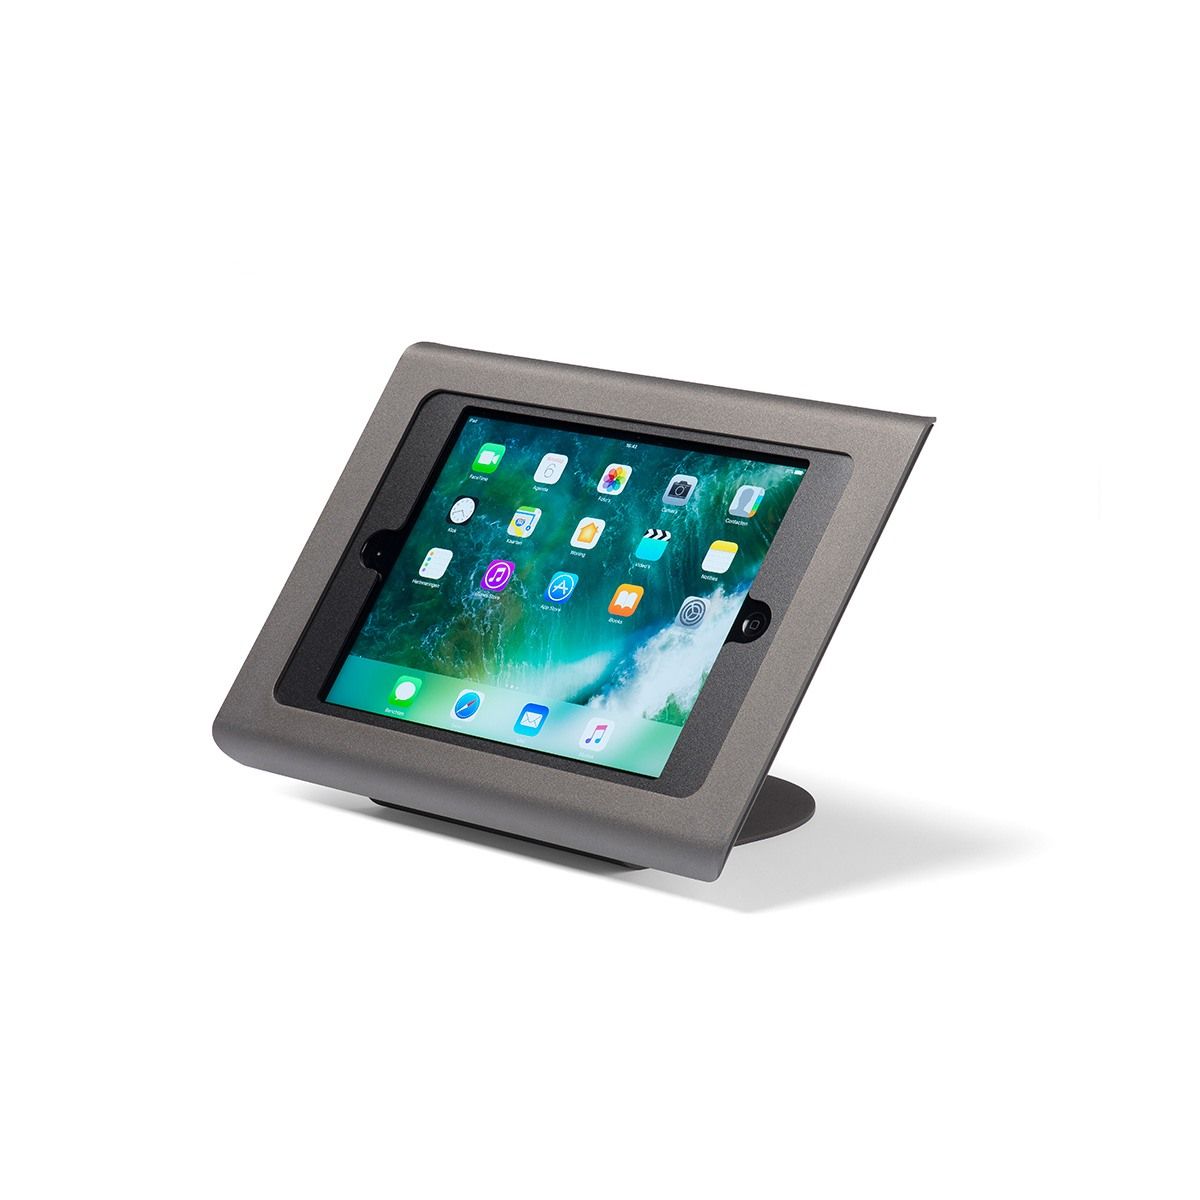 Diebstahlsichere Tablet / iPad Tischhalterung